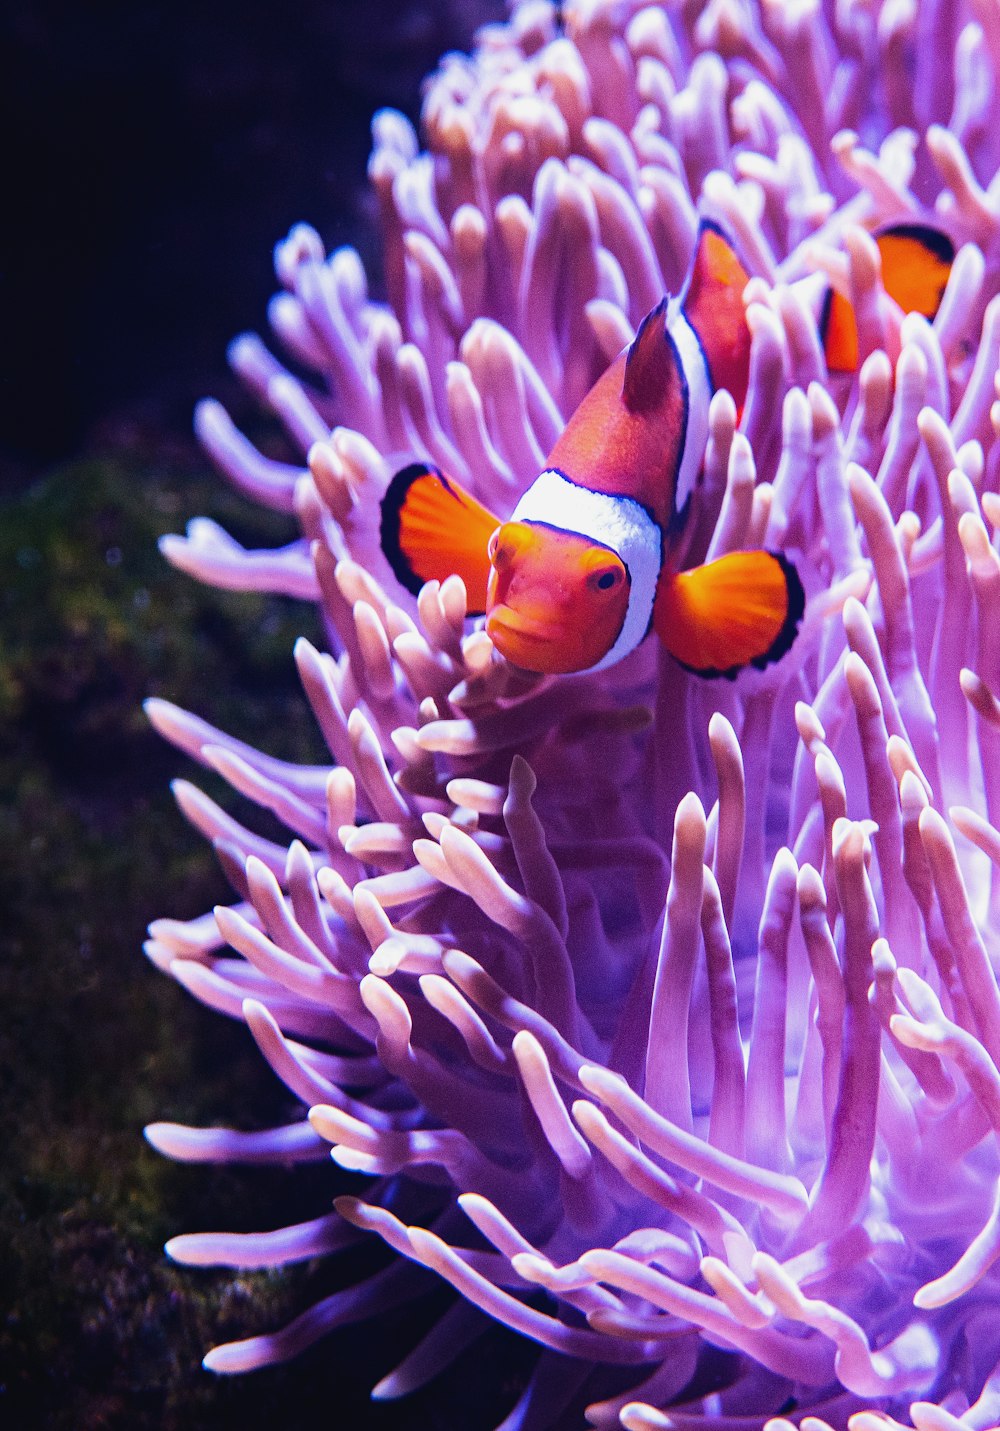 fotografia ravvicinata di pesce pagliaccio accanto alla spaccatura del corallo viola